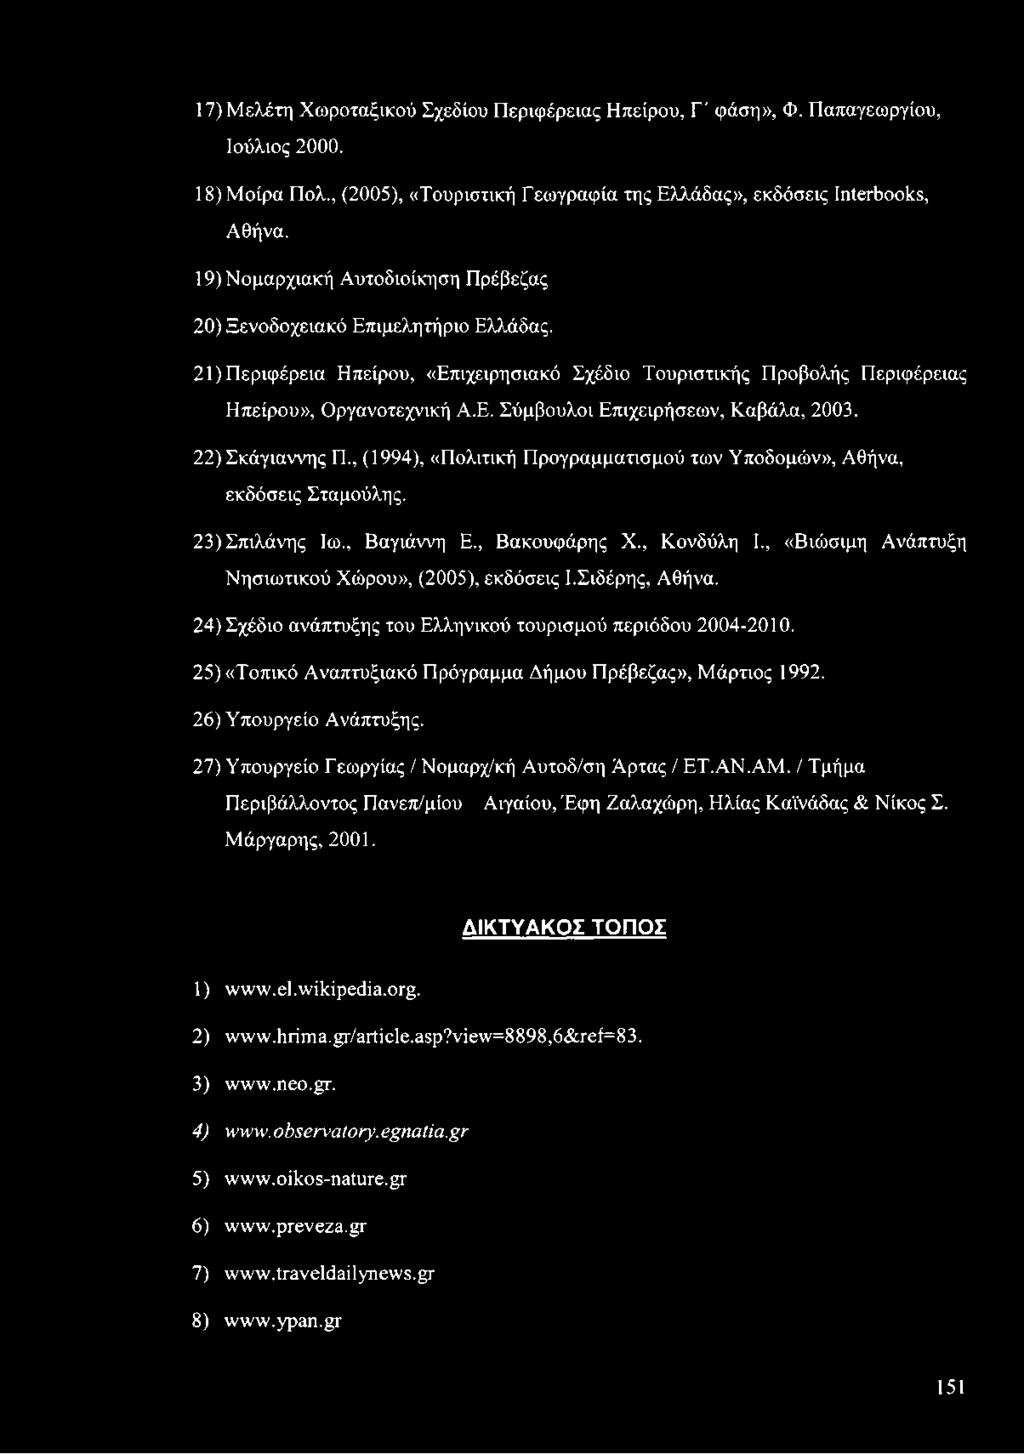 22) Σκάγιαννης Π., (1994), «Πολιτική Προγραμματισμού των Υποδομών», Αθήνα, εκδόσεις Σταμούλης. 23) Σπιλάνης Ιω., Βαγιάννη Ε., Βακουφάρης X., Κονδύλη I.